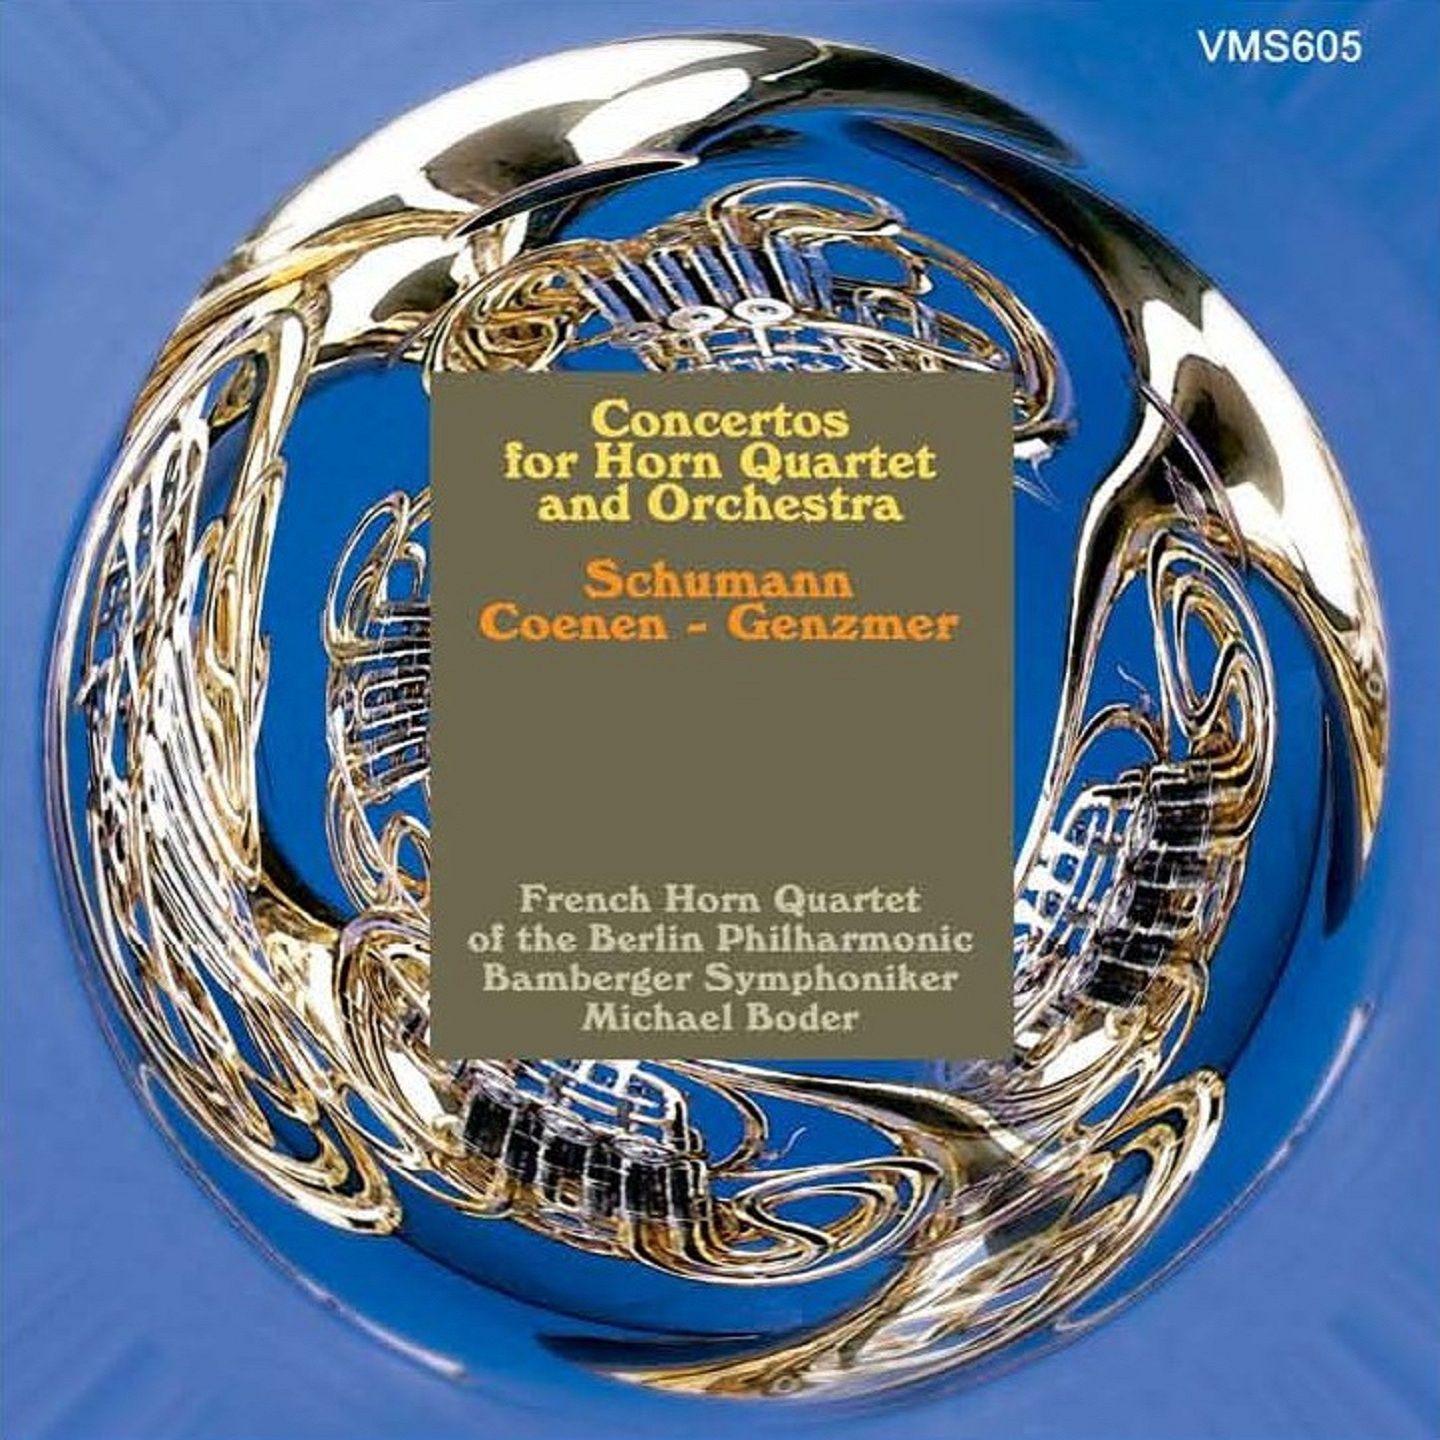 Konzertstü ck for Four horns and Orchestra, Op. 86: II. Romanze  III. Sehr lebhaft